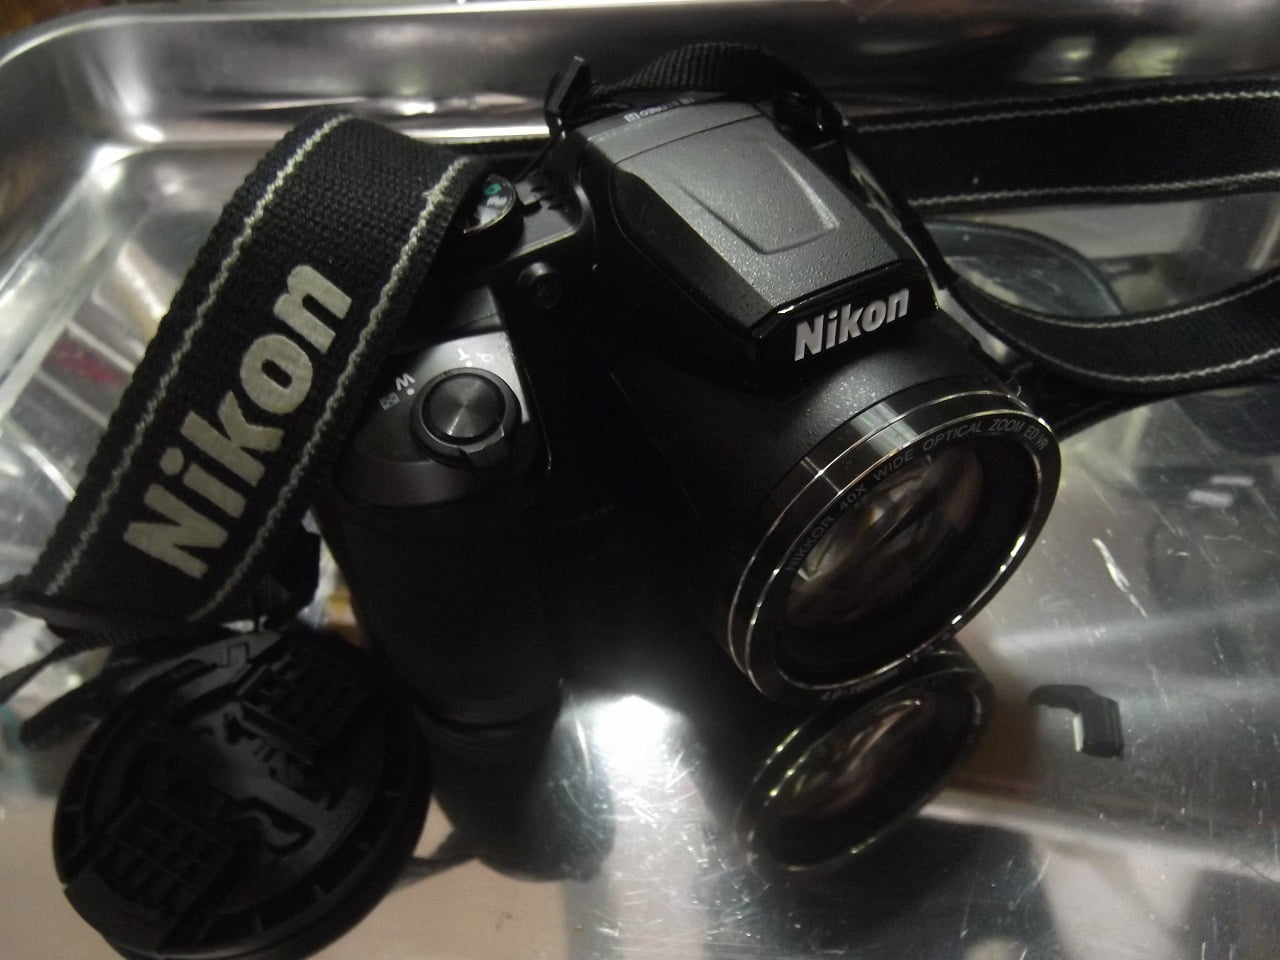 “苦言”!!-“もう二度と抱かない!!”-“Nikon”社製品-“COOLPIX B500″の相次ぐ不具合と故障と修理!!